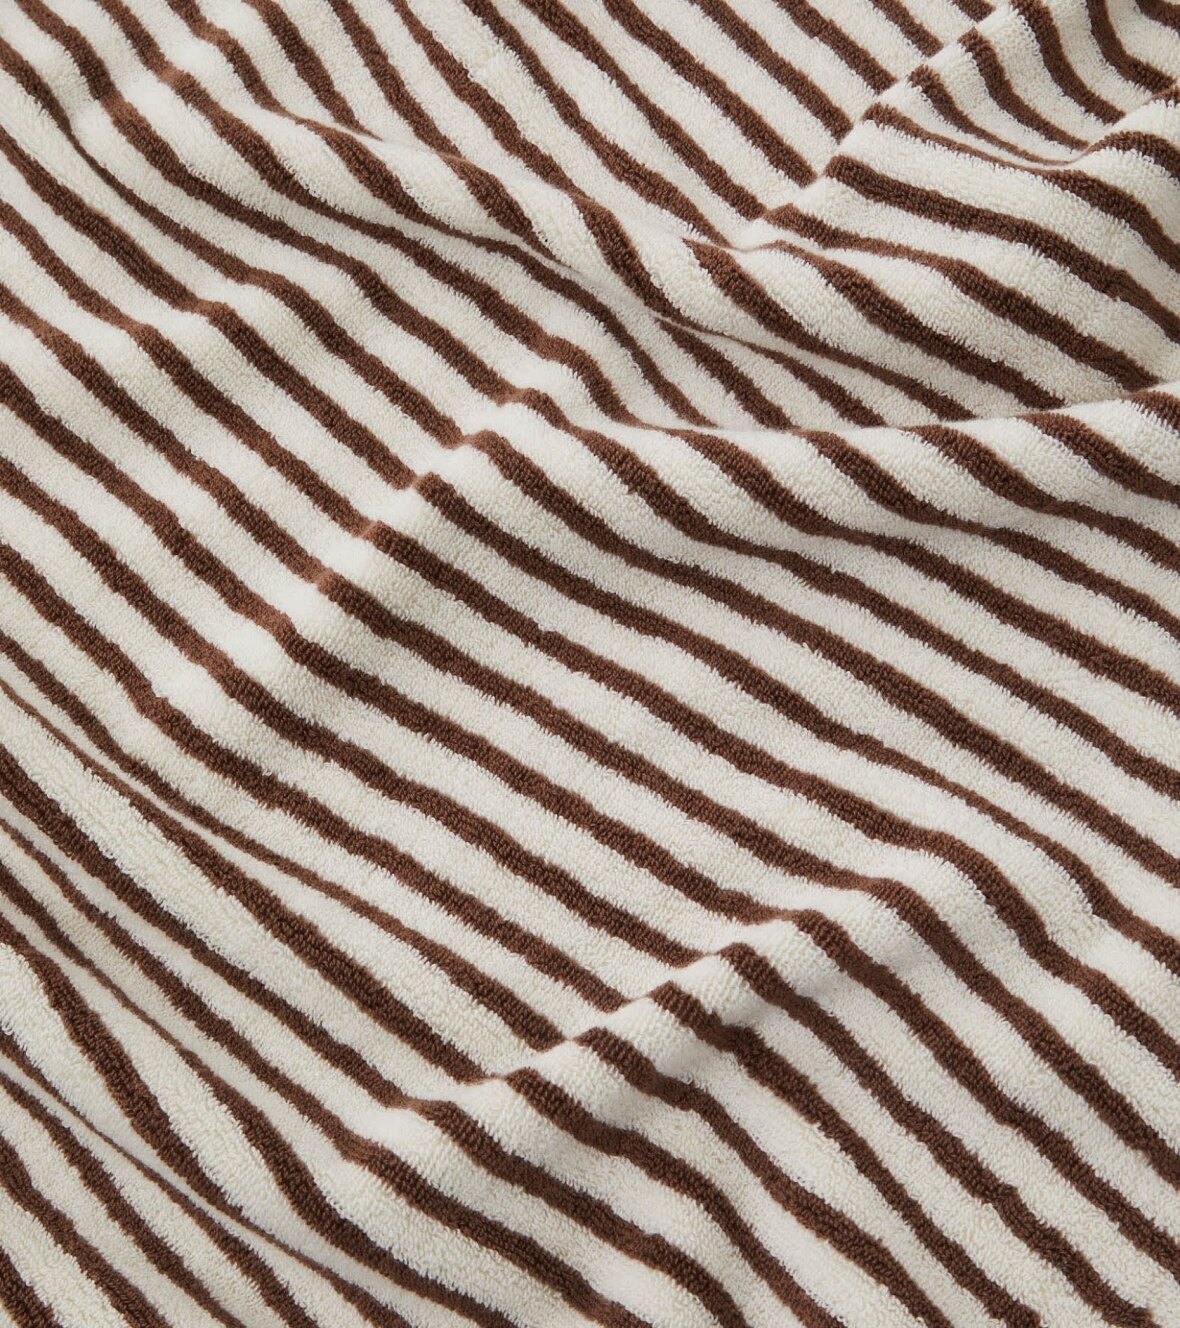 https://www.dr-adams.dk/shared/66/285/tekla-bath-towel-70x140-kodiak-stripes_1180w.jpg